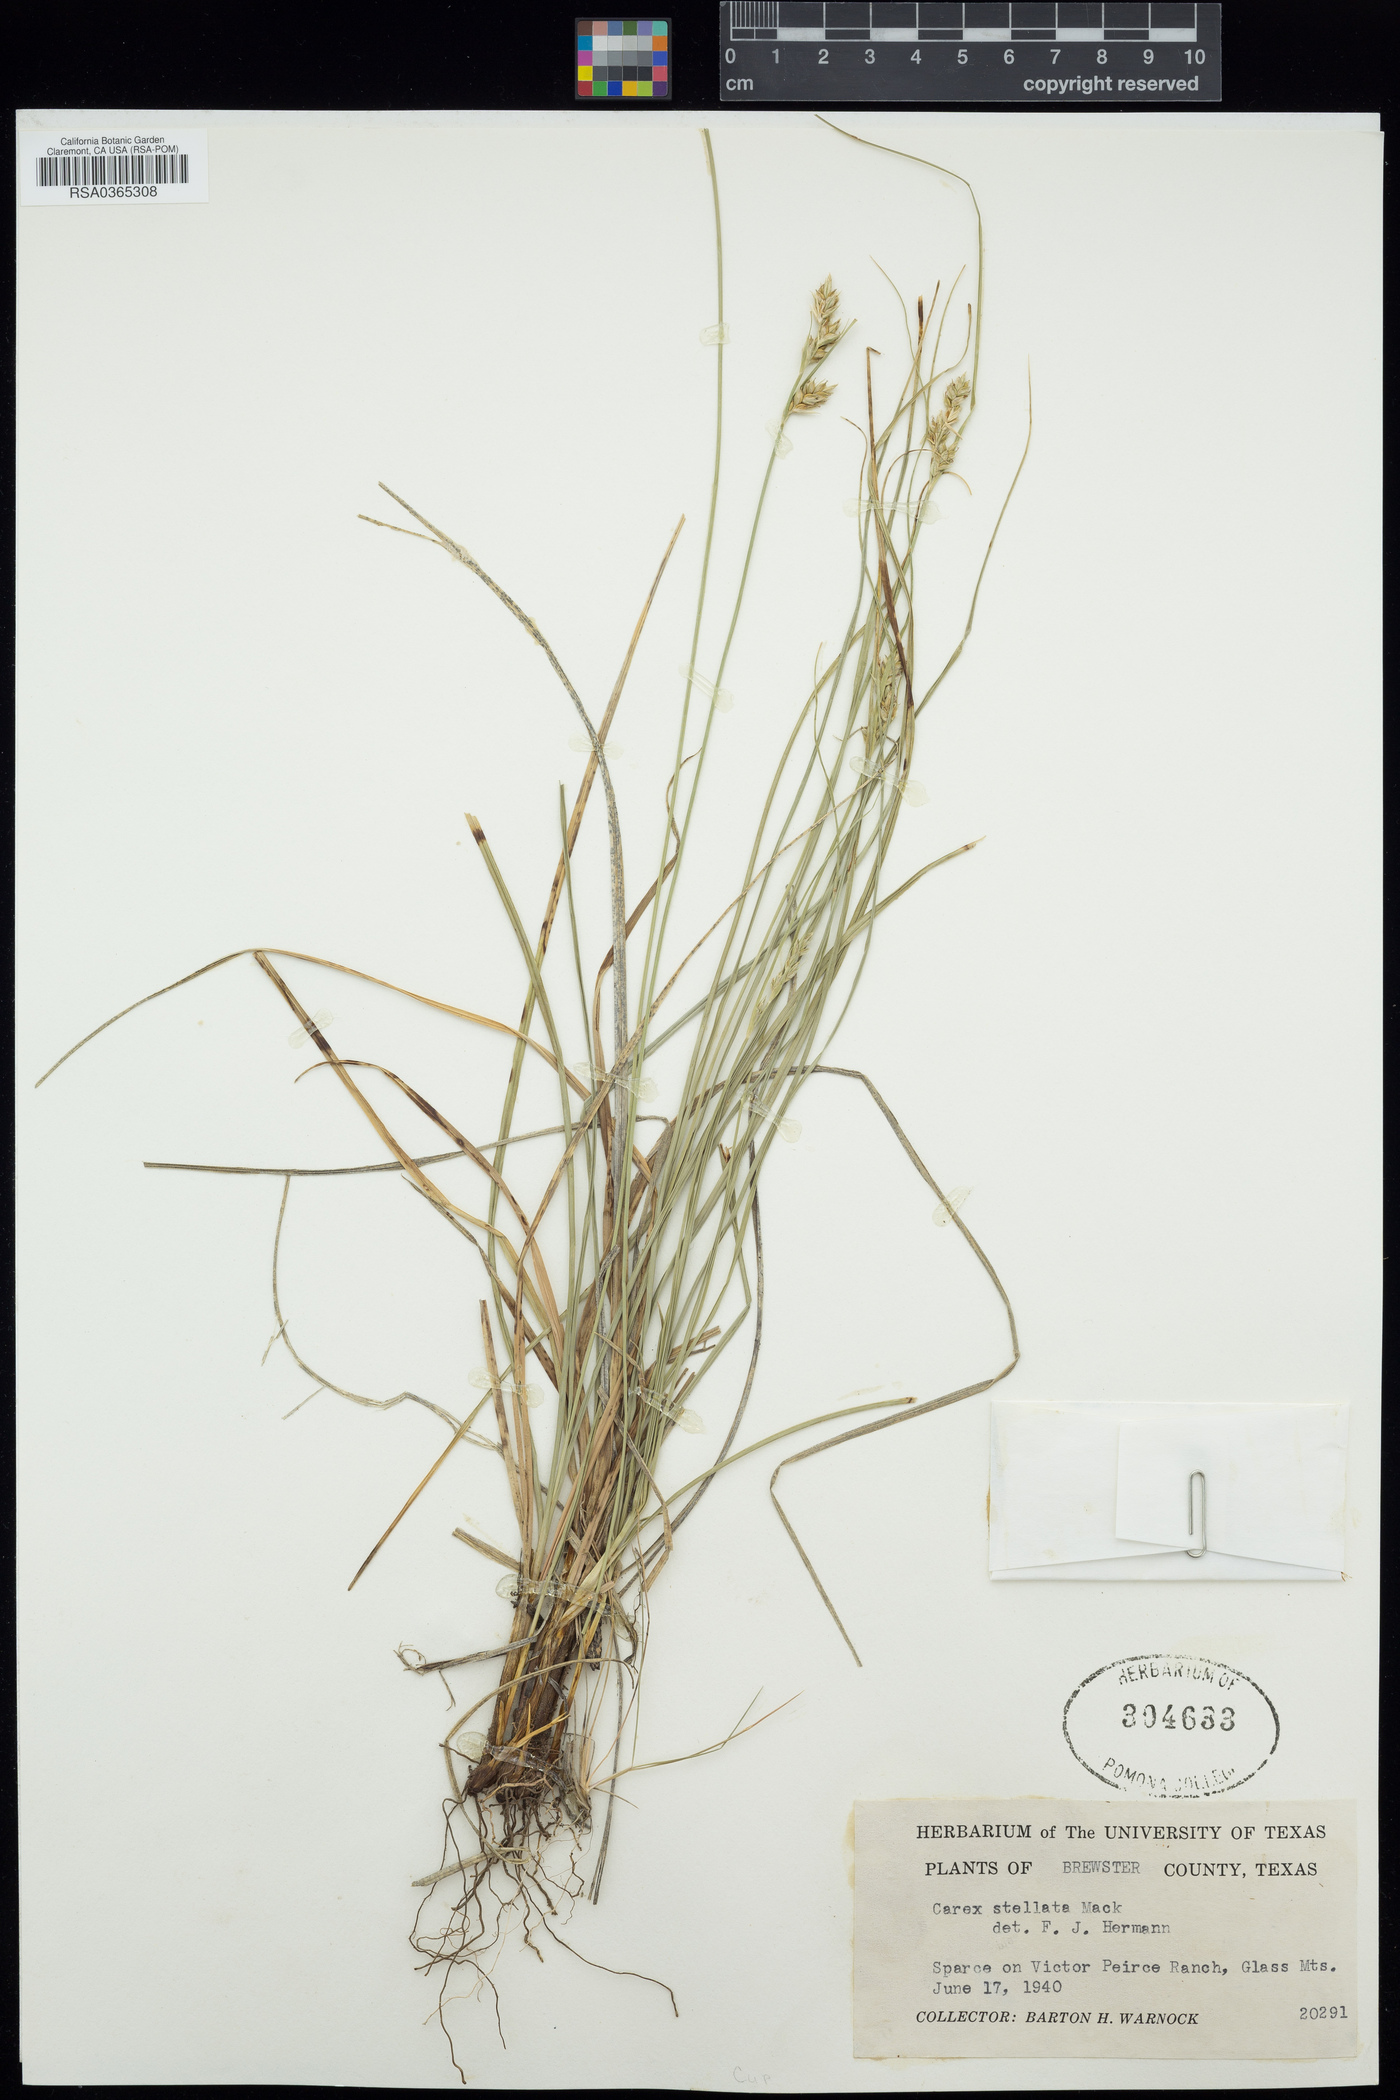 Carex schiedeana image